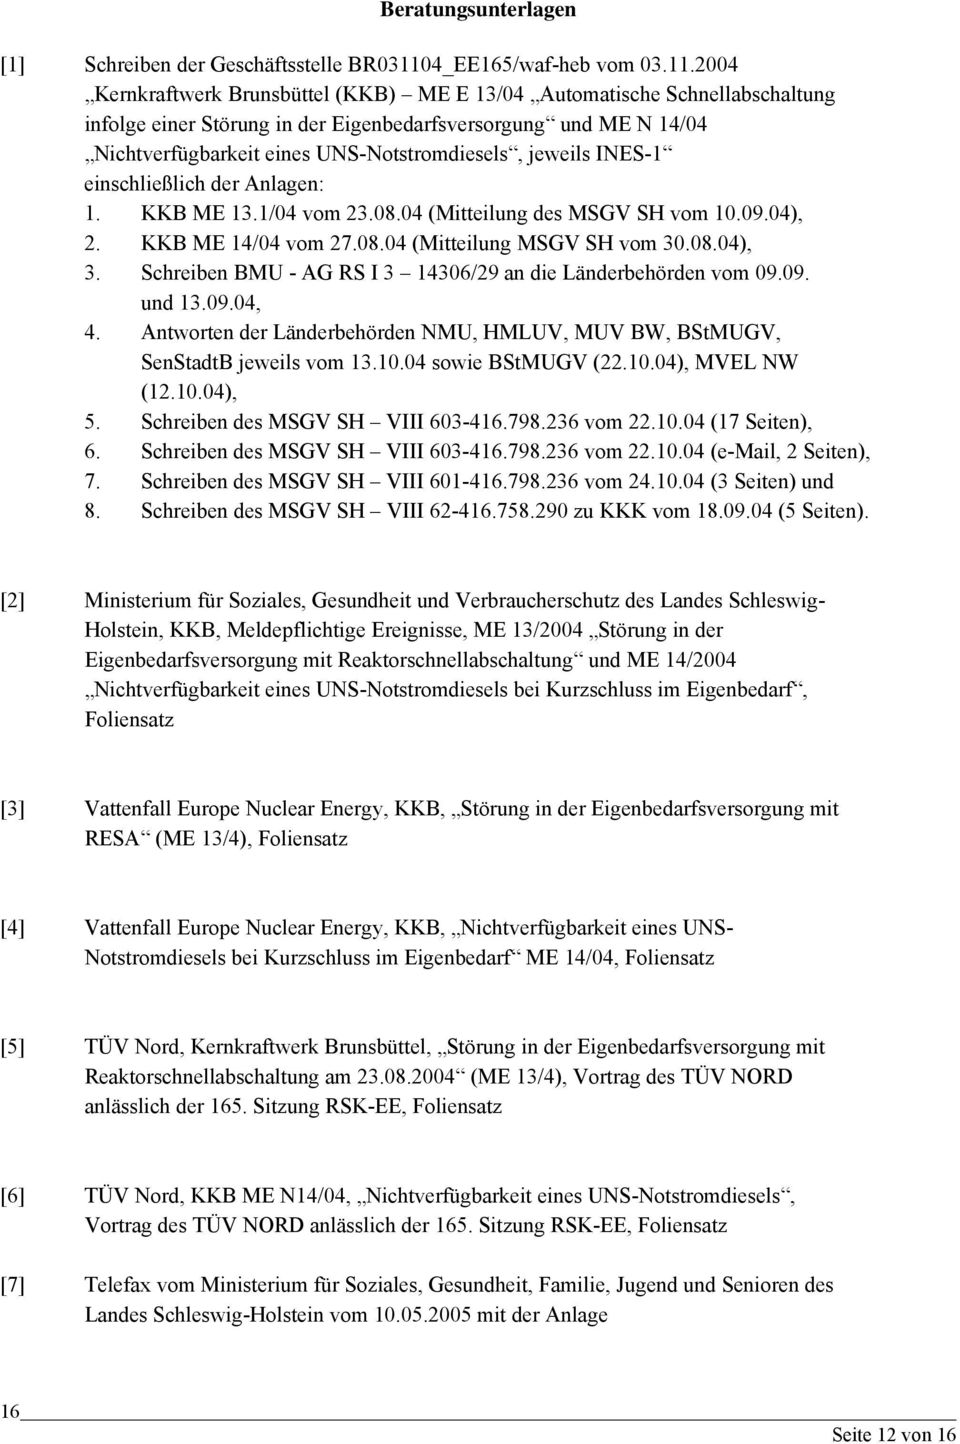 2004 Kernkraftwerk Brunsbüttel (KKB) ME E 13/04 Automatische Schnellabschaltung infolge einer Störung in der Eigenbedarfsversorgung und ME N 14/04 Nichtverfügbarkeit eines UNS-Notstromdiesels,